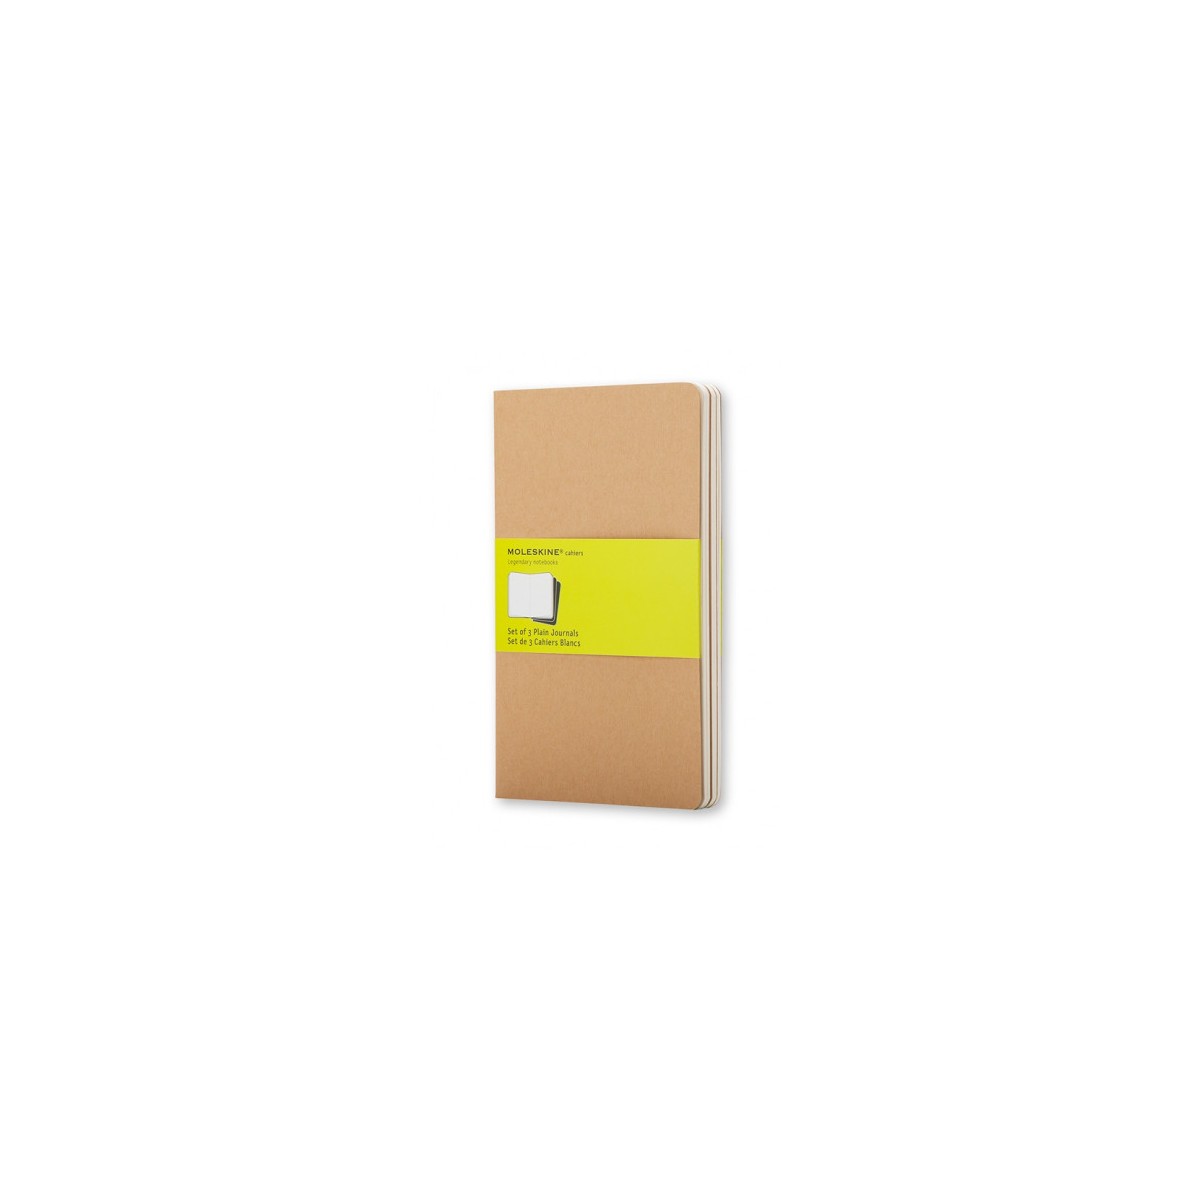 Moleskine 705007 cuaderno y block Beige 80 hojas